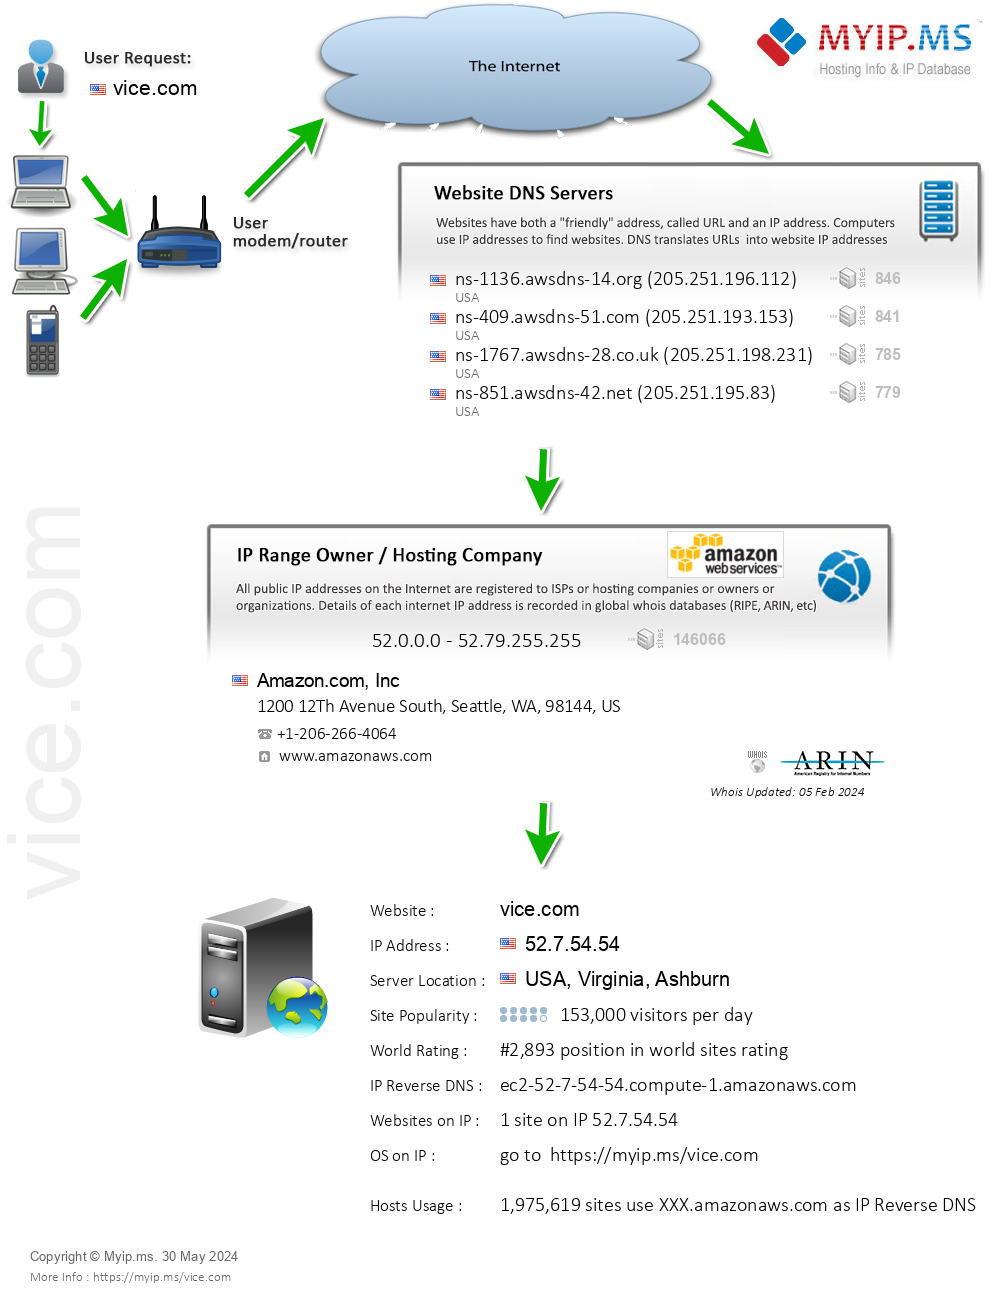 Vice.com - Website Hosting Visual IP Diagram